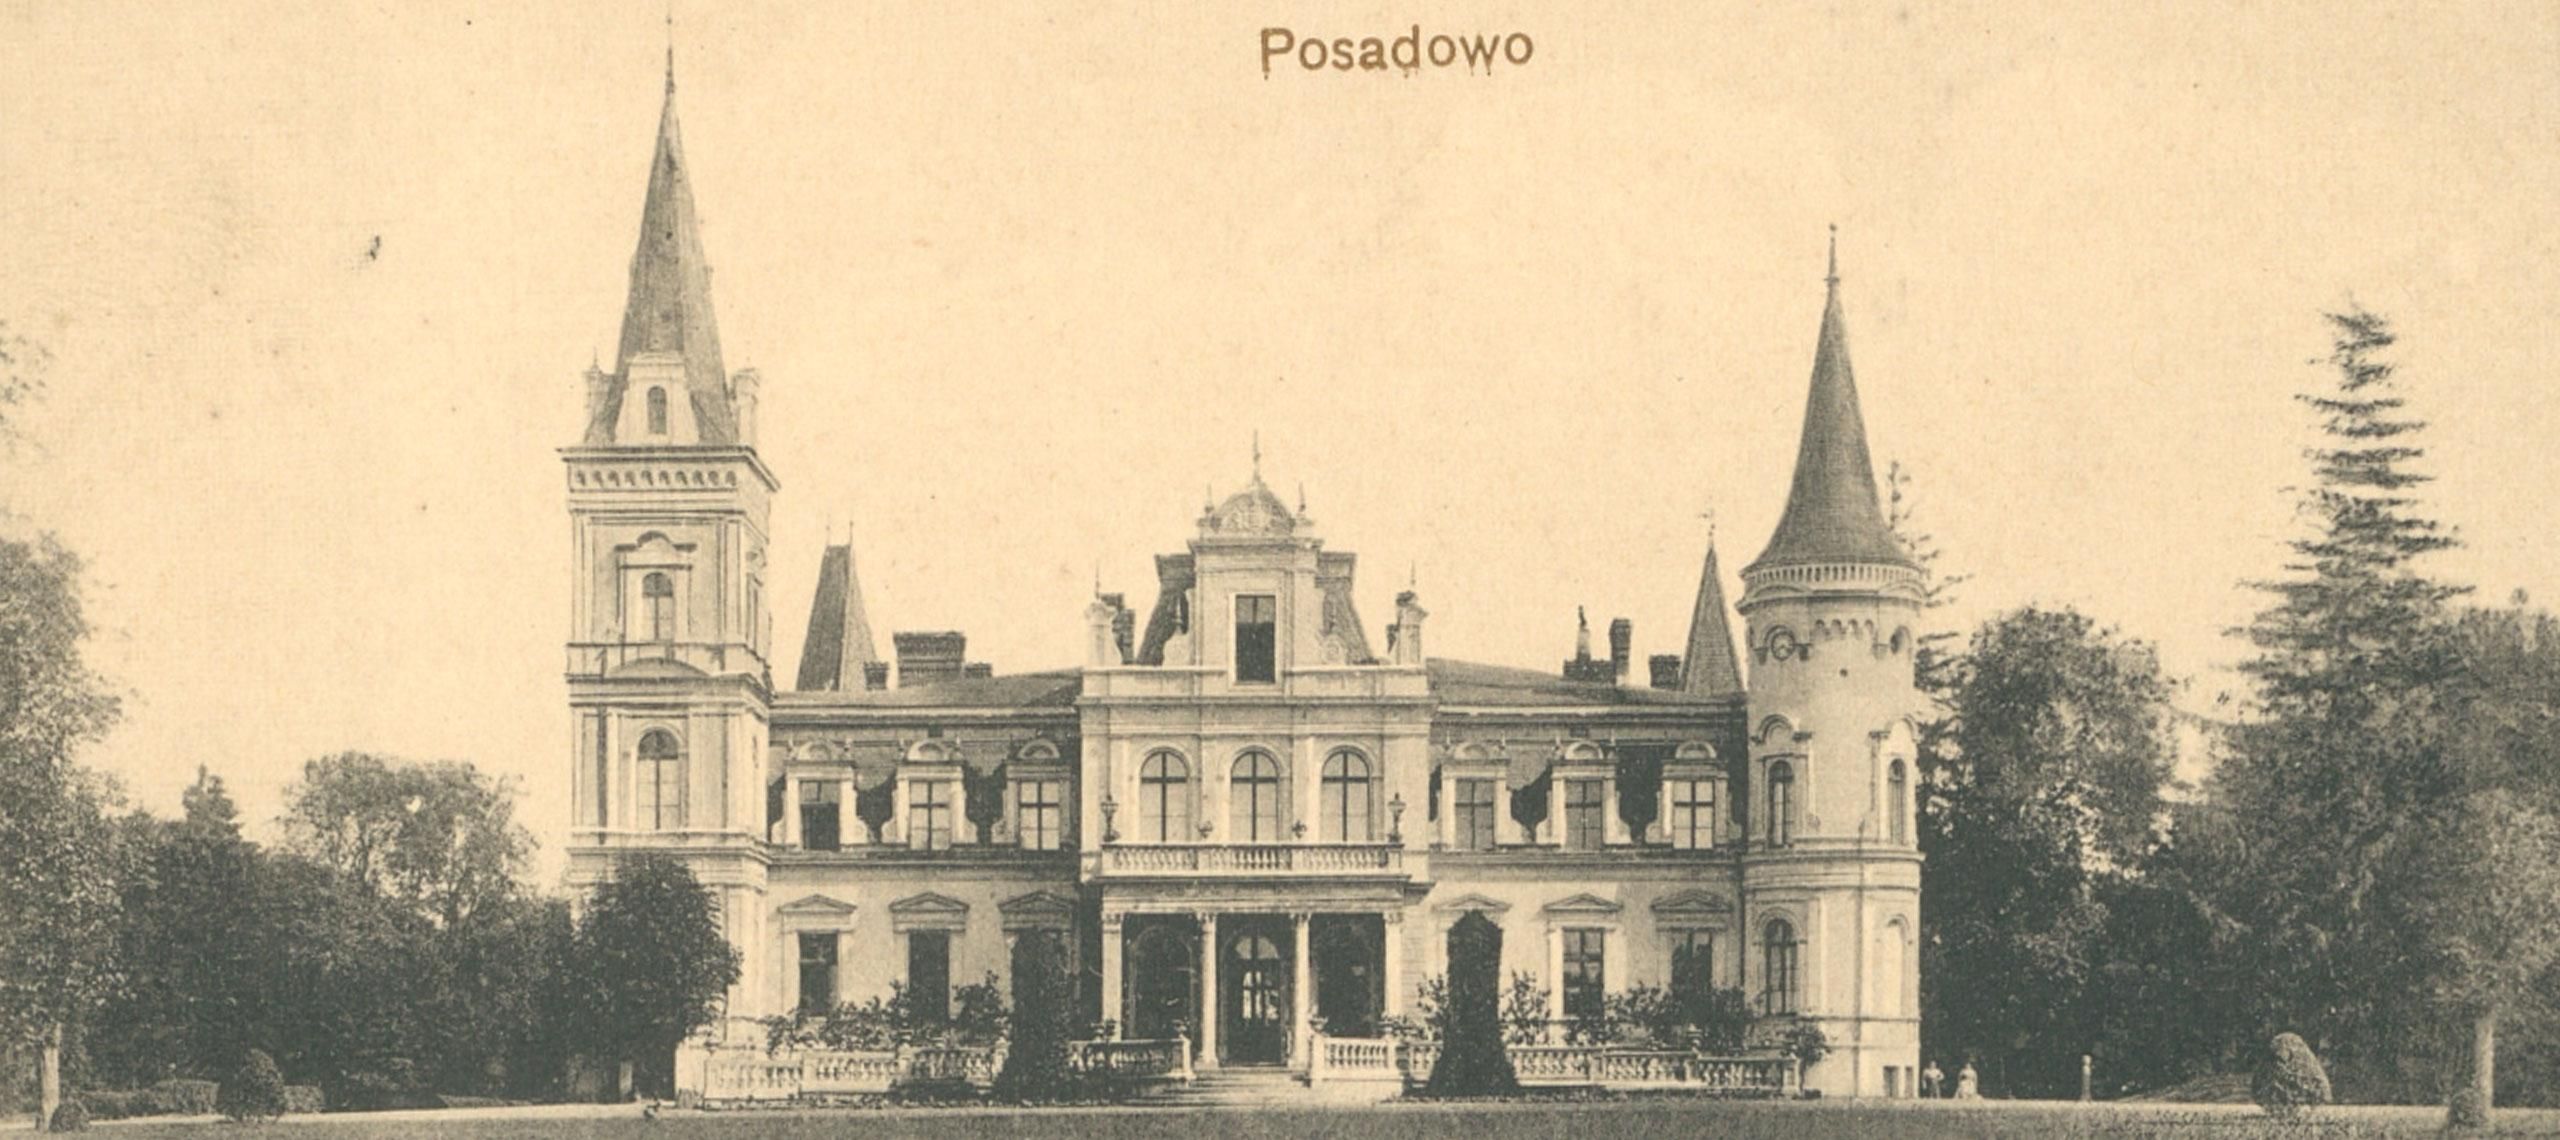 Pałac w Posadowie